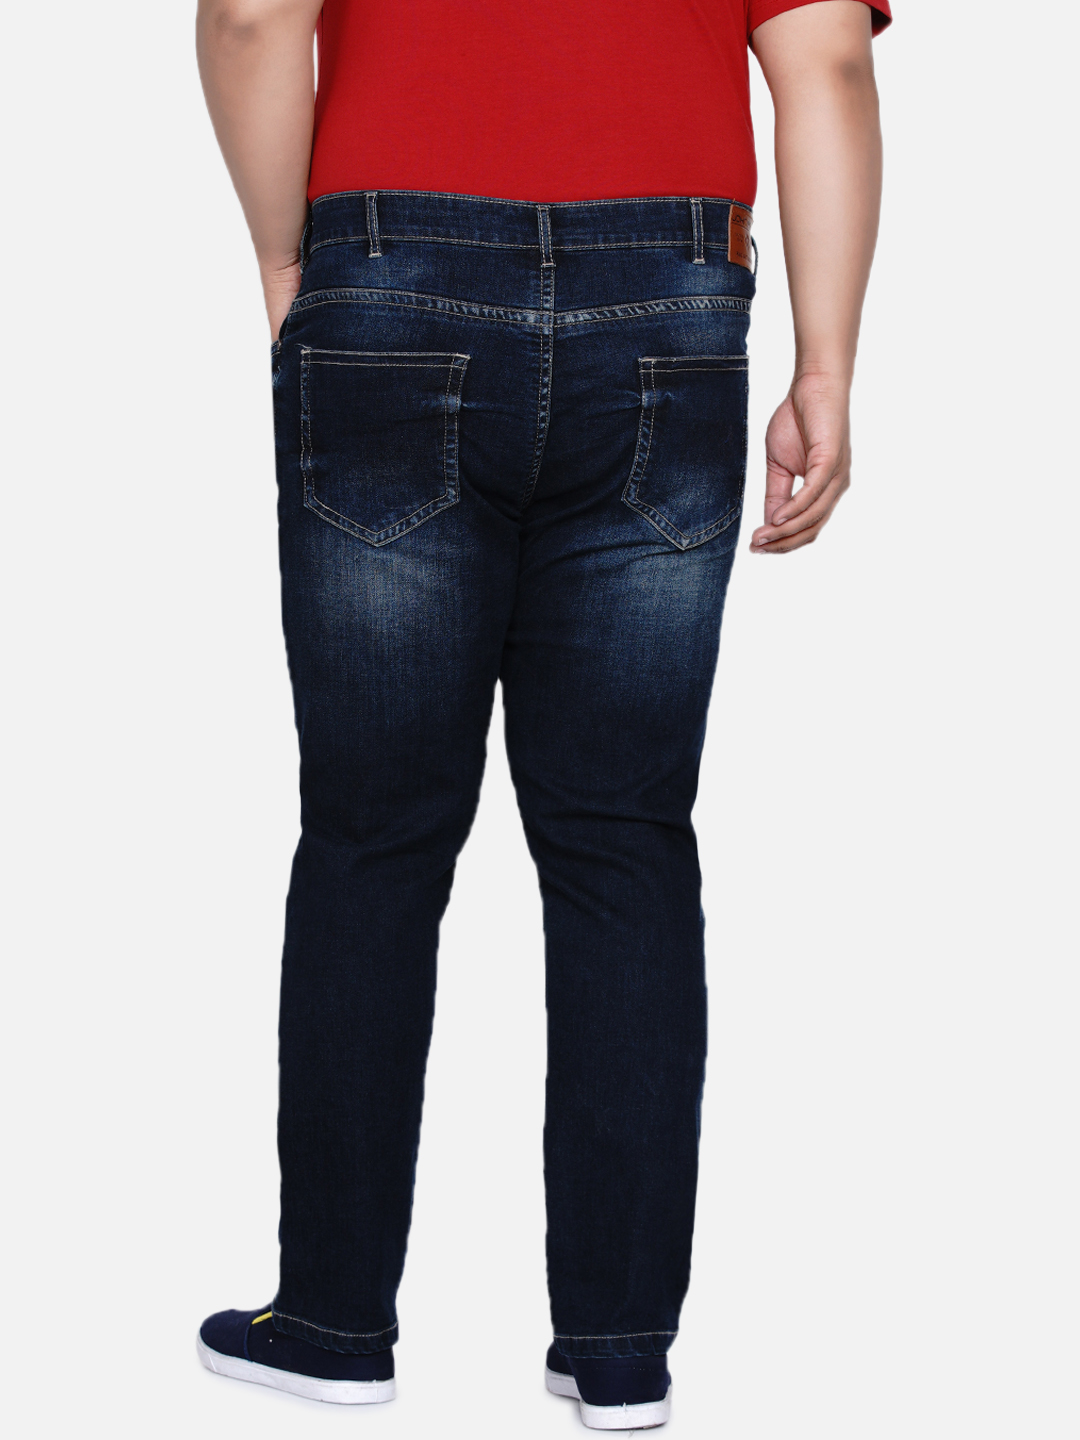 bottomwear/jeans/JPJ12184/jpj12184-6.jpg